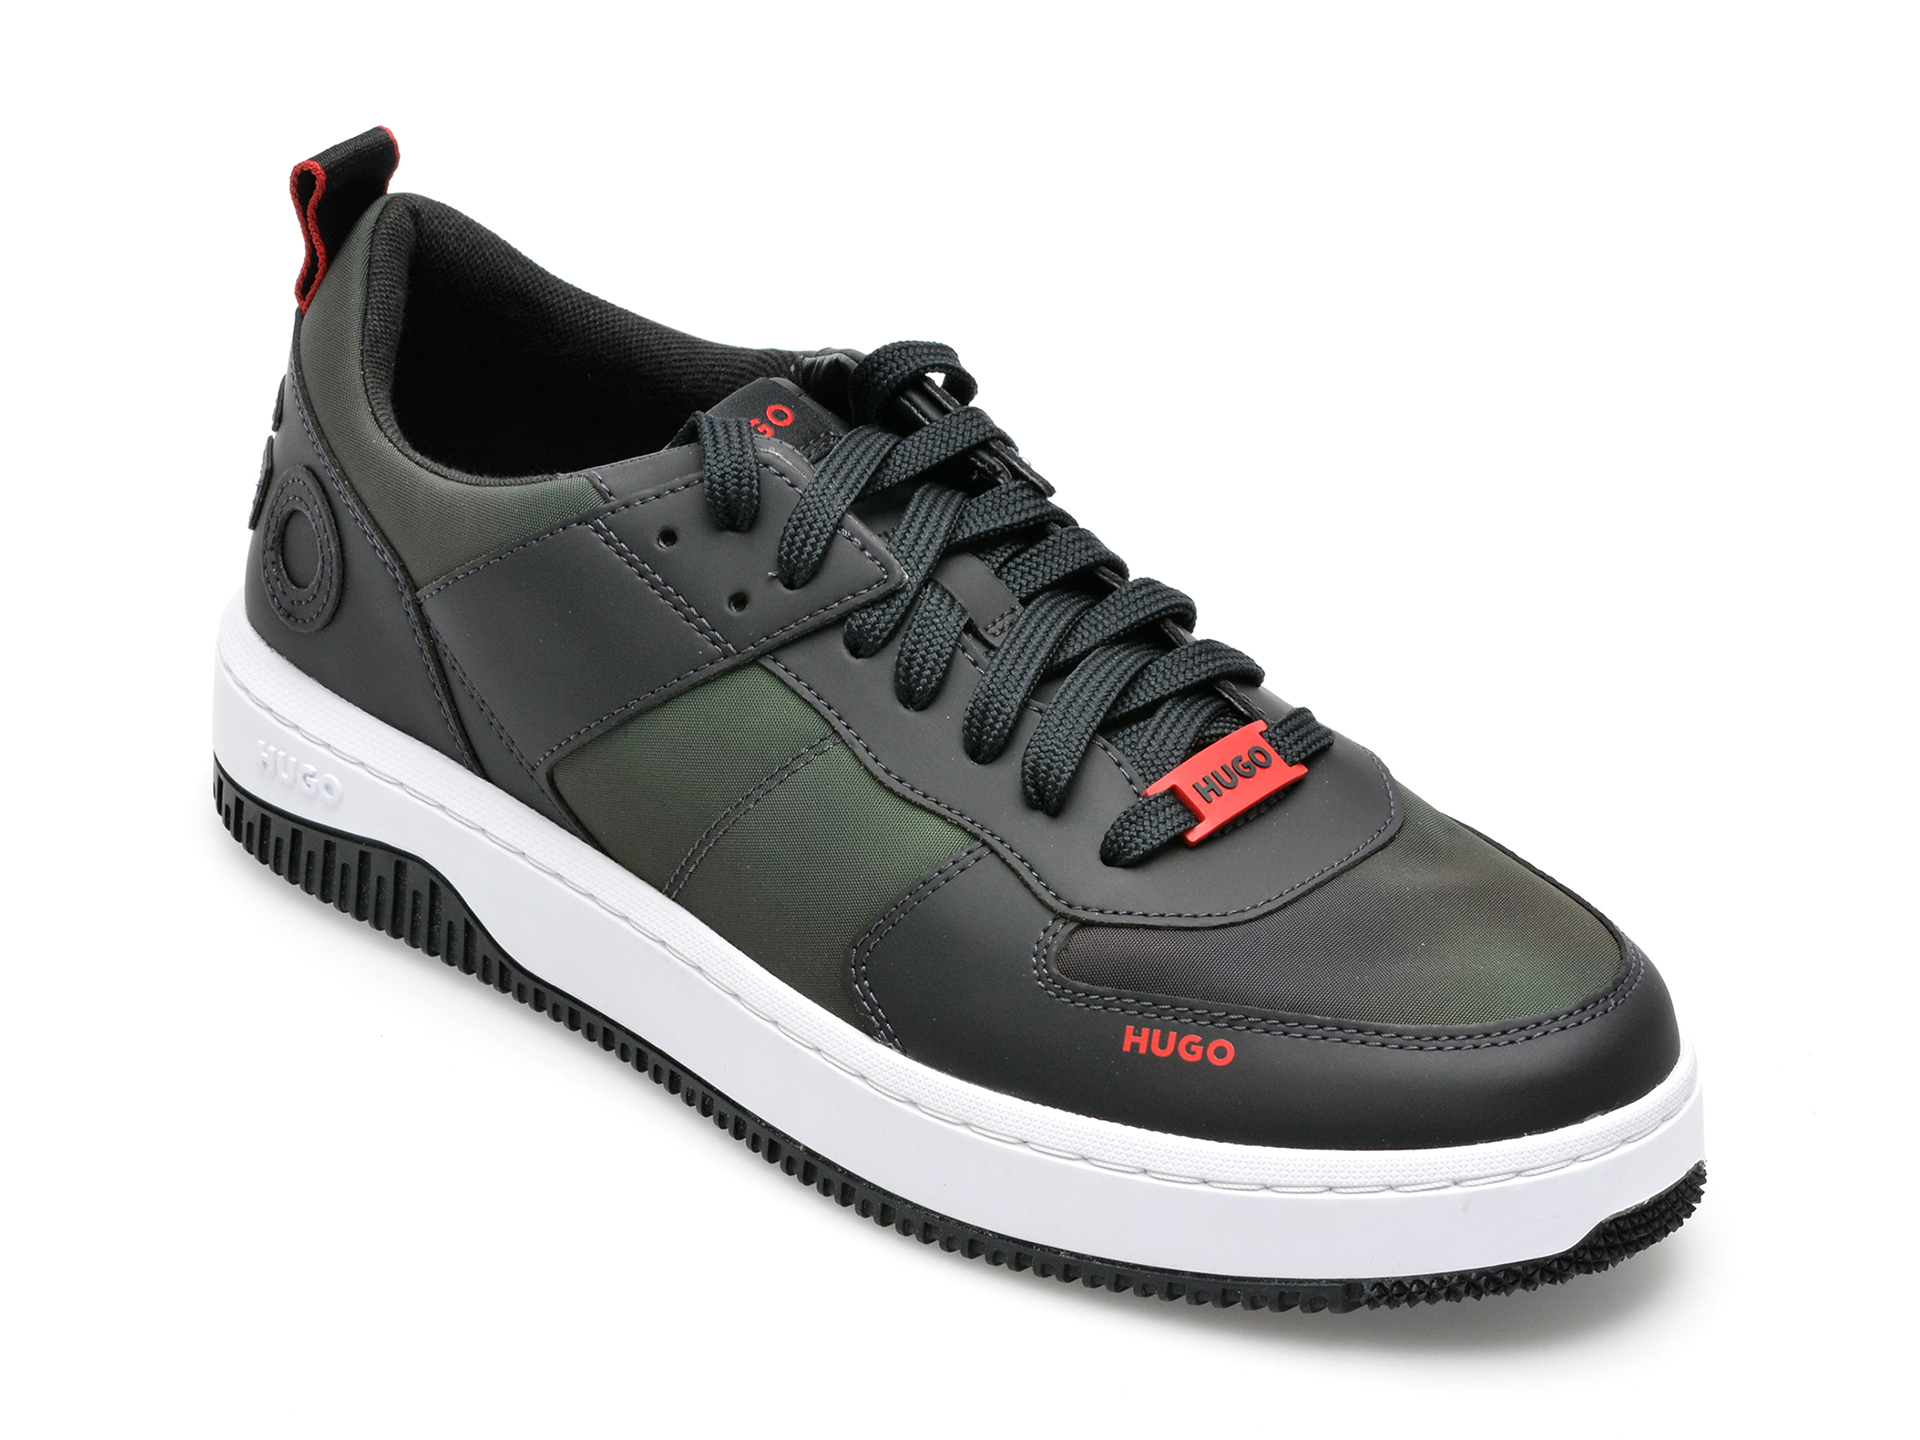 Pantofi sport HUGO kaki, 3118, din material textil BARBATI 2023-06-04